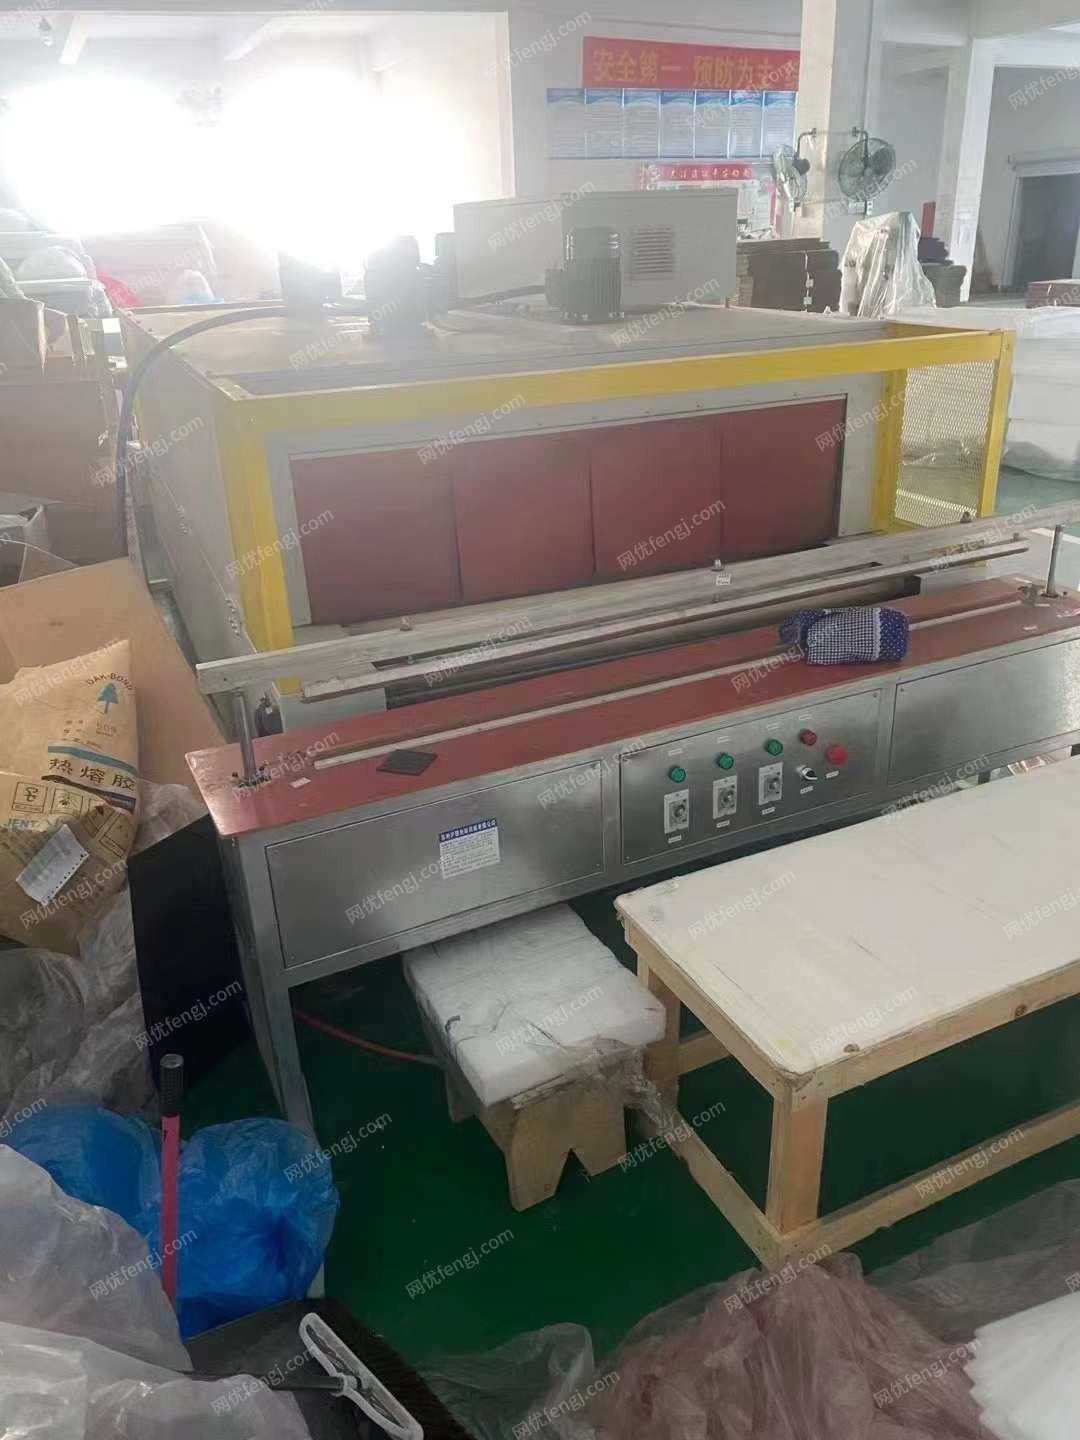 浙江宁波工厂出售二手自动化包装机 、覆膜机等，需要联系